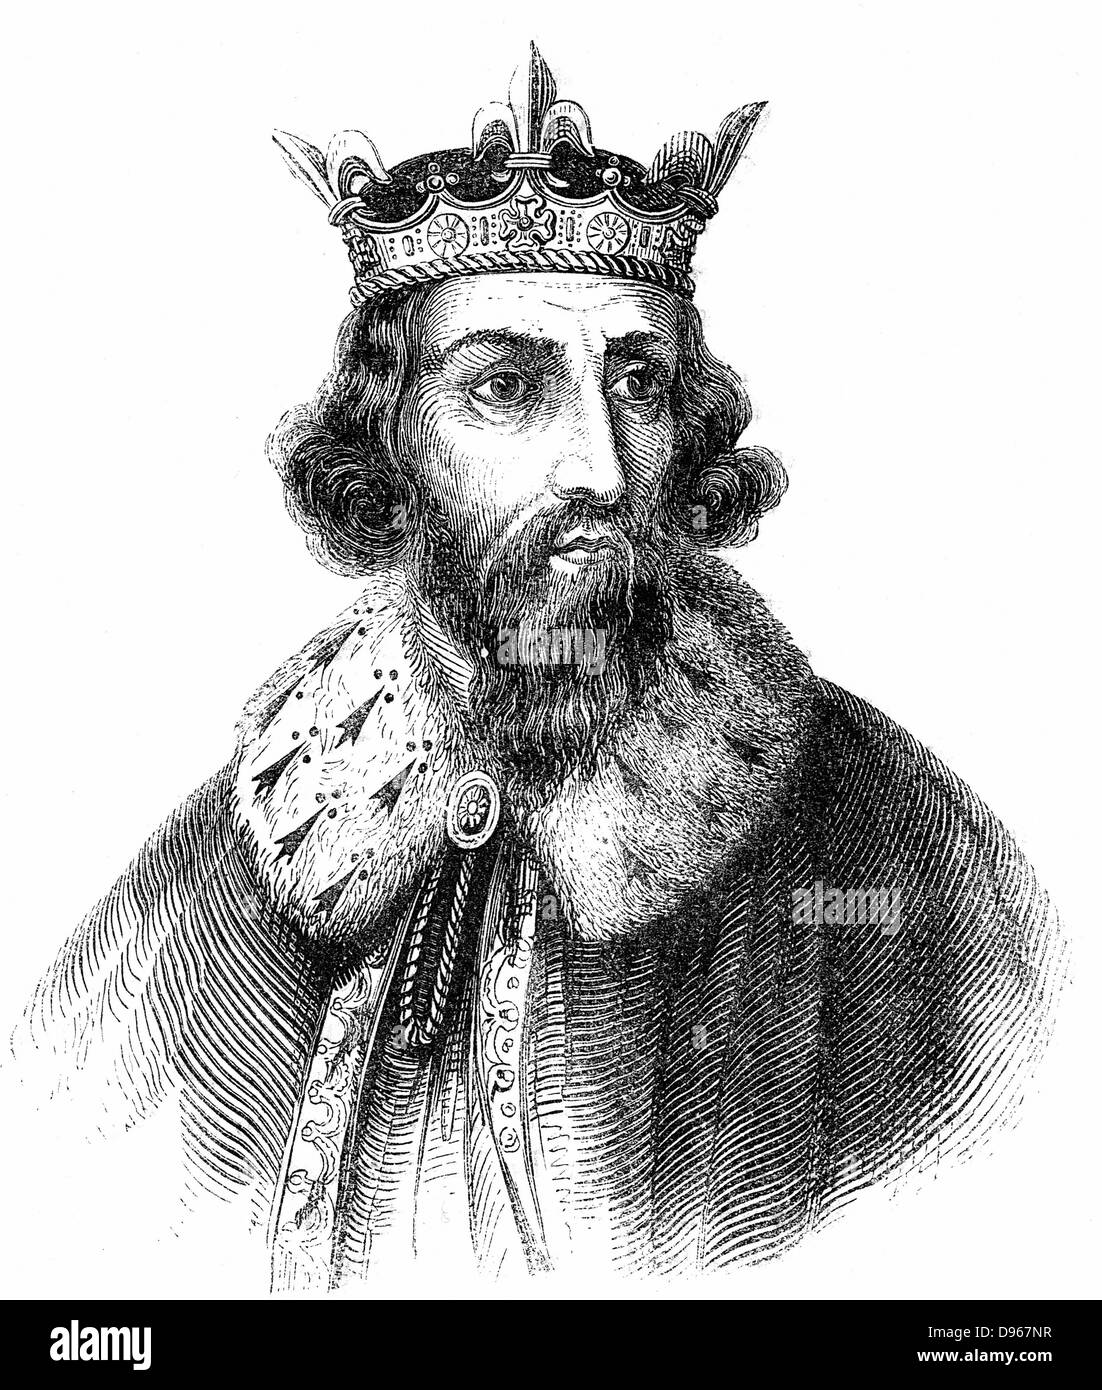 Alfred le Grand (849-899) roi anglo-saxon du Wessex de 871. Défait les Danois à Edington, Wiltshire. Il a signé le traité de partition et formalisation de Danelaw 886. Gravure c1850 Banque D'Images